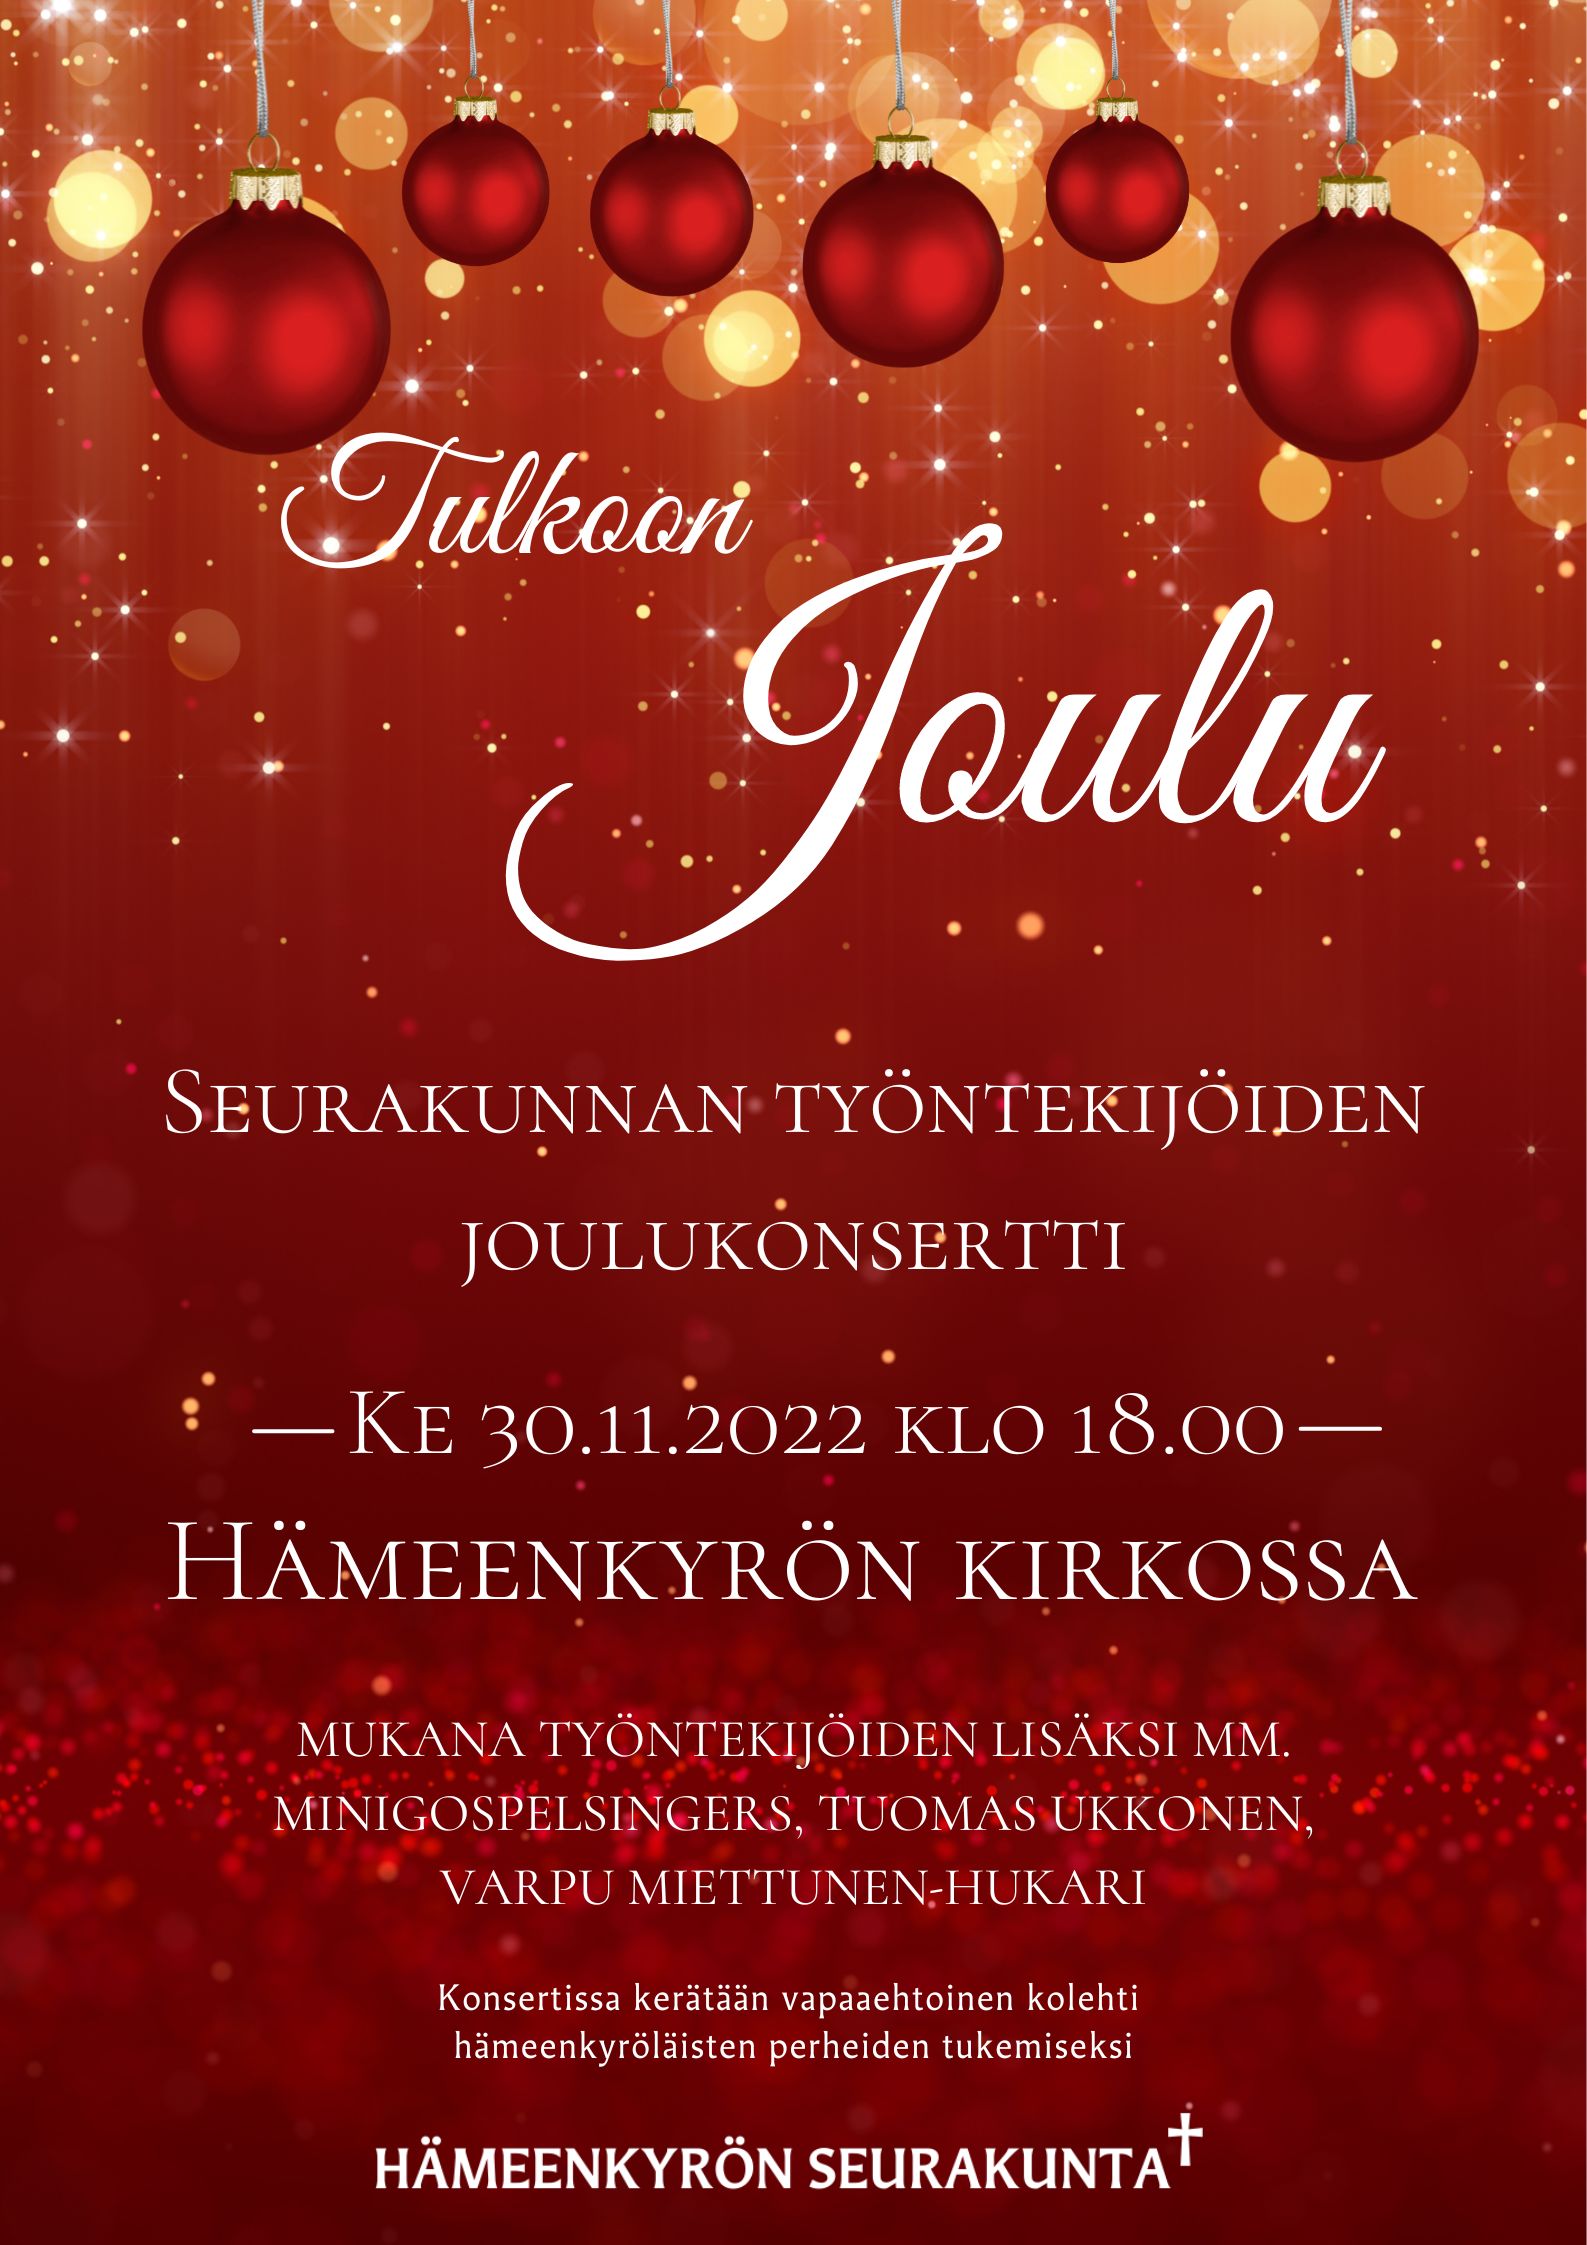 Tulkoon Joulu -seurakunnan työntekijöiden joulukonsertti ke 30.11.2022 klo 18 Hämeenkyrön kirkossa.